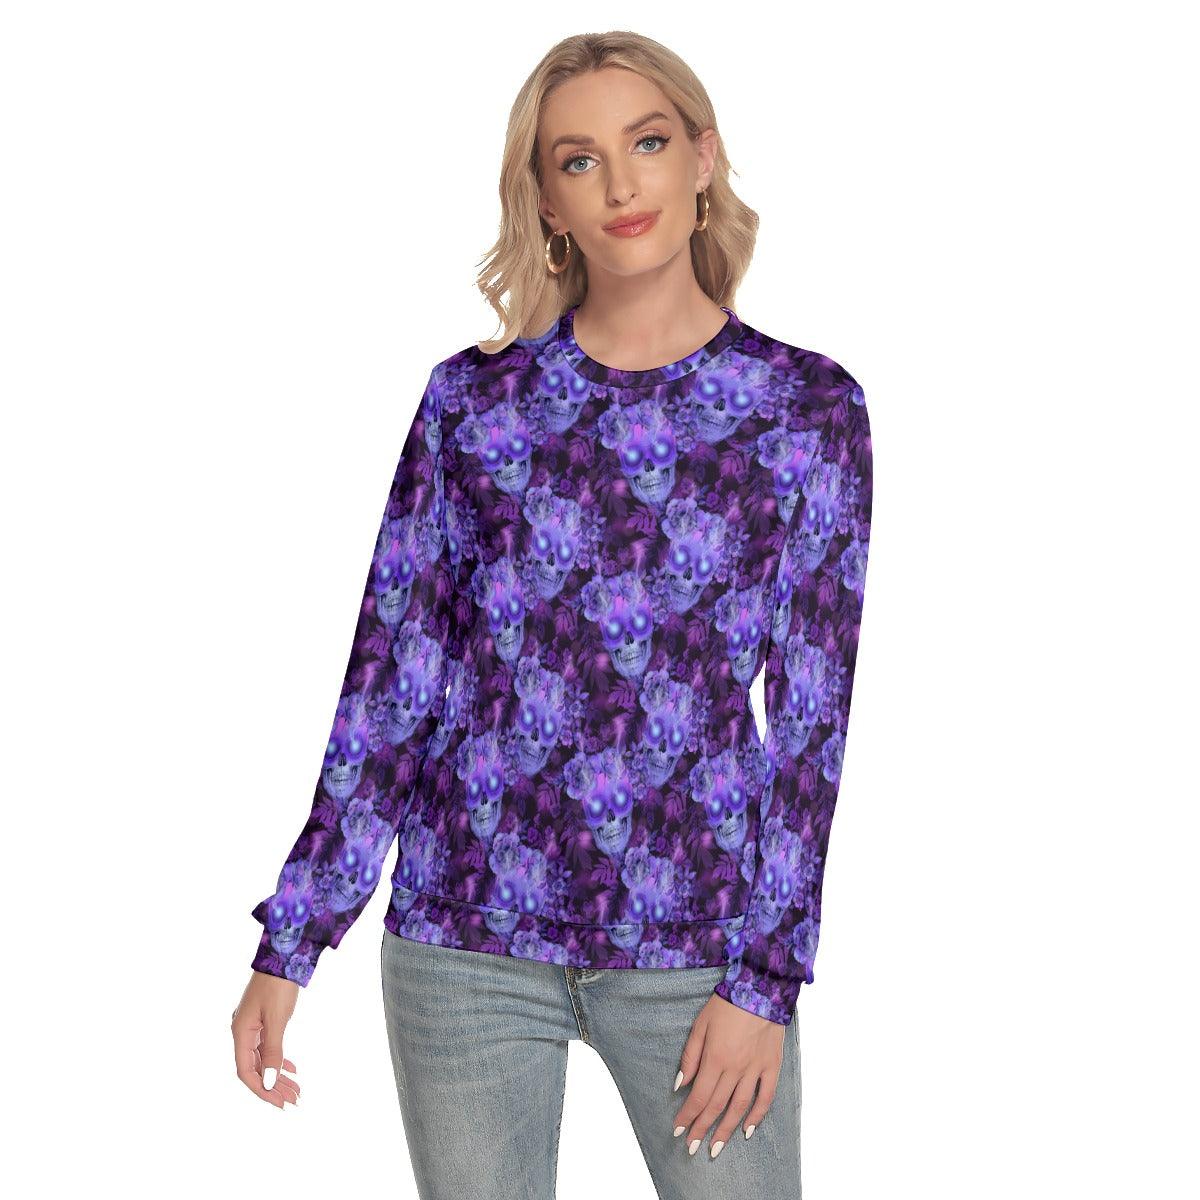 Purple Skull Flower Slim Round Neck Sweatshirt - Wonder Skull